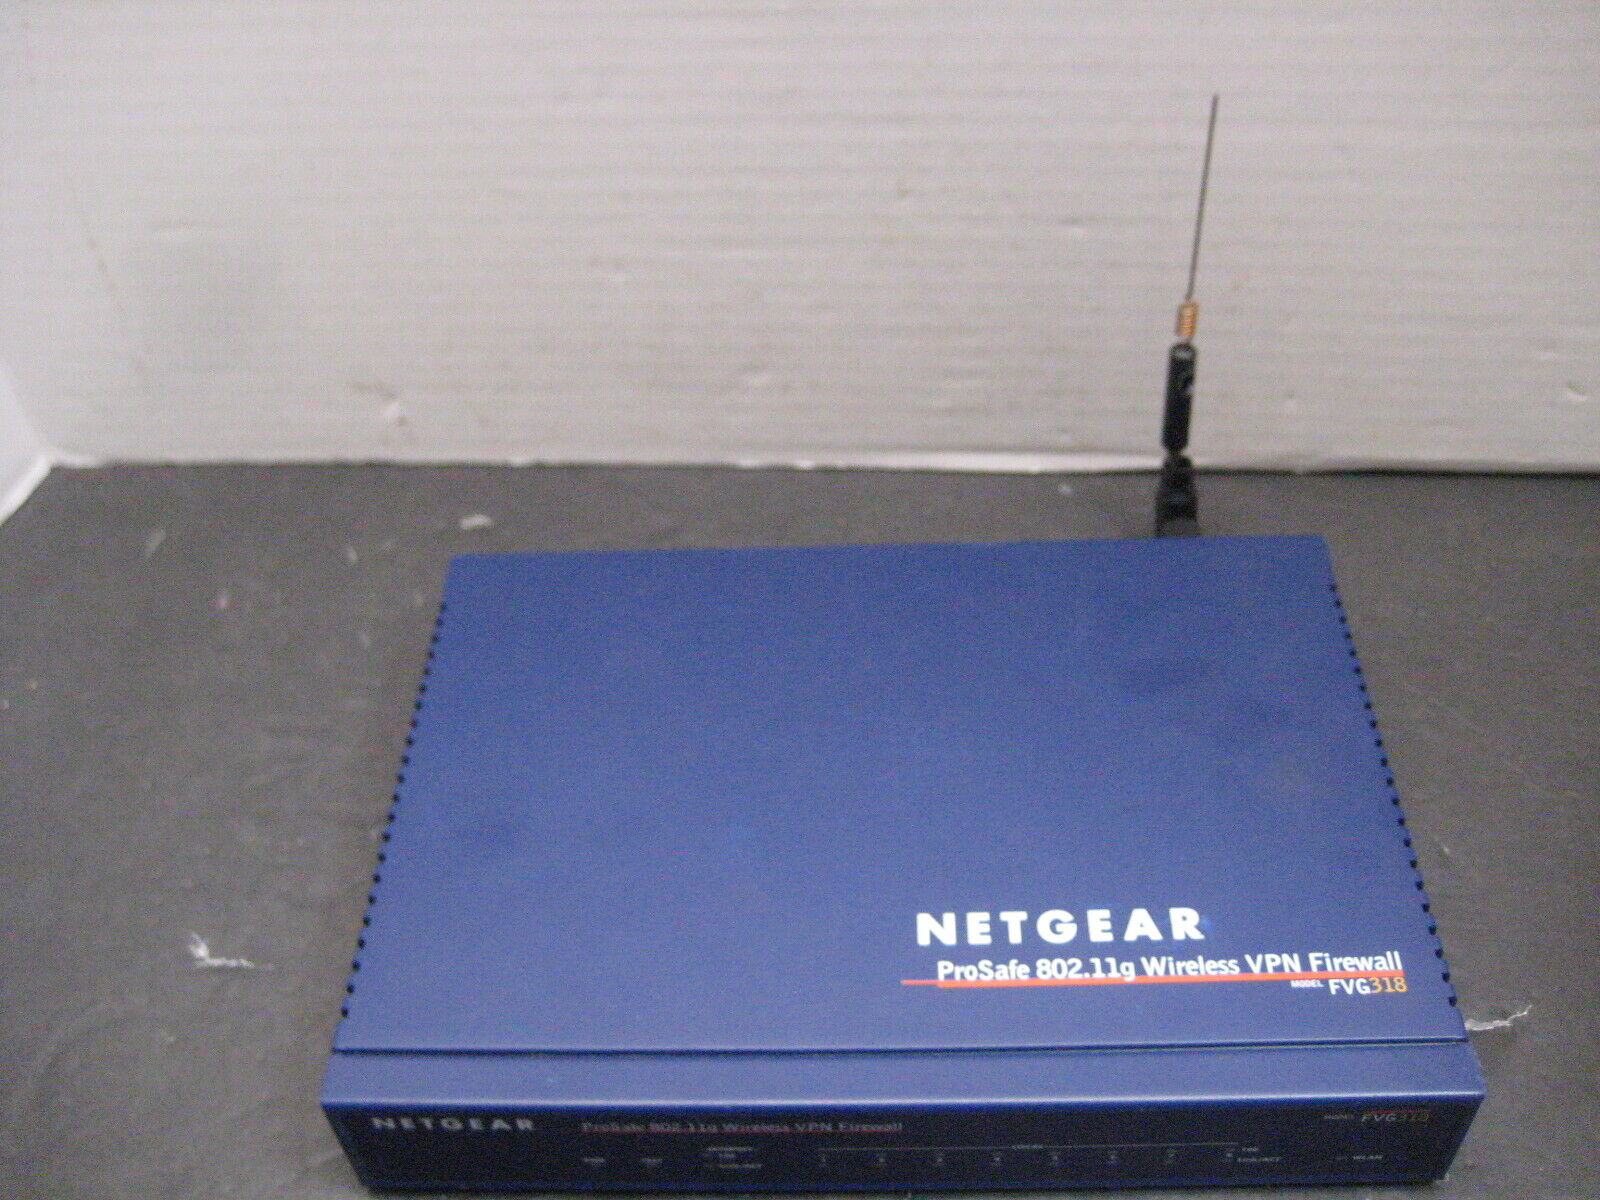 Netgear ProSafe 802.11g Wireless VPN Firewalll Model FVG318 Parts Or Repair  